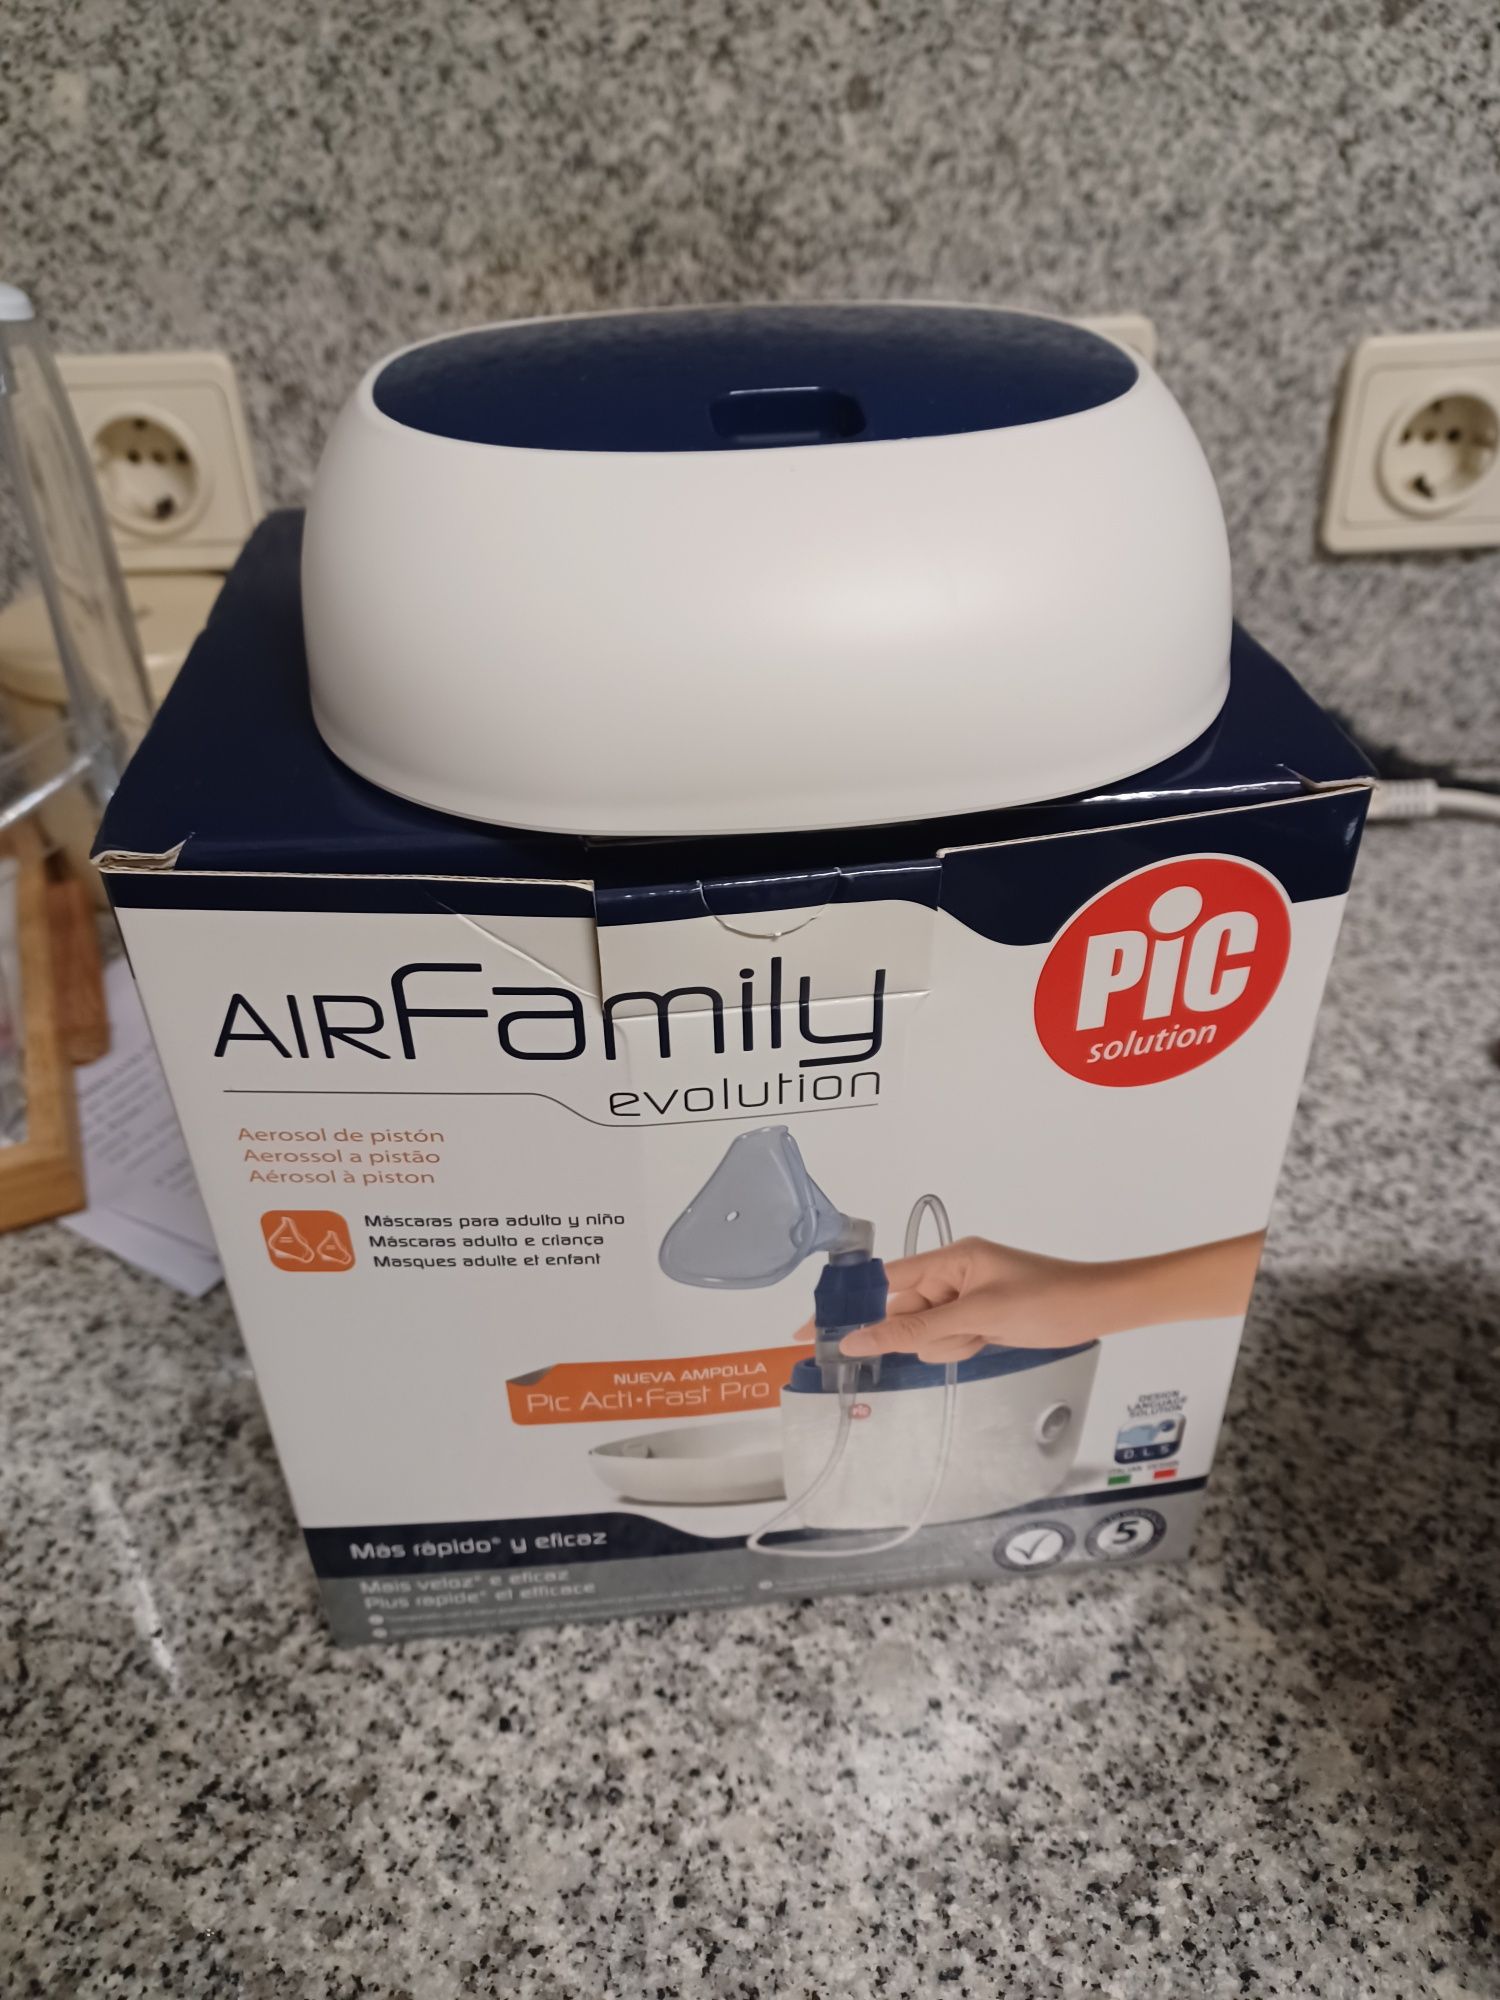 Aparelho pic solution air family evolution